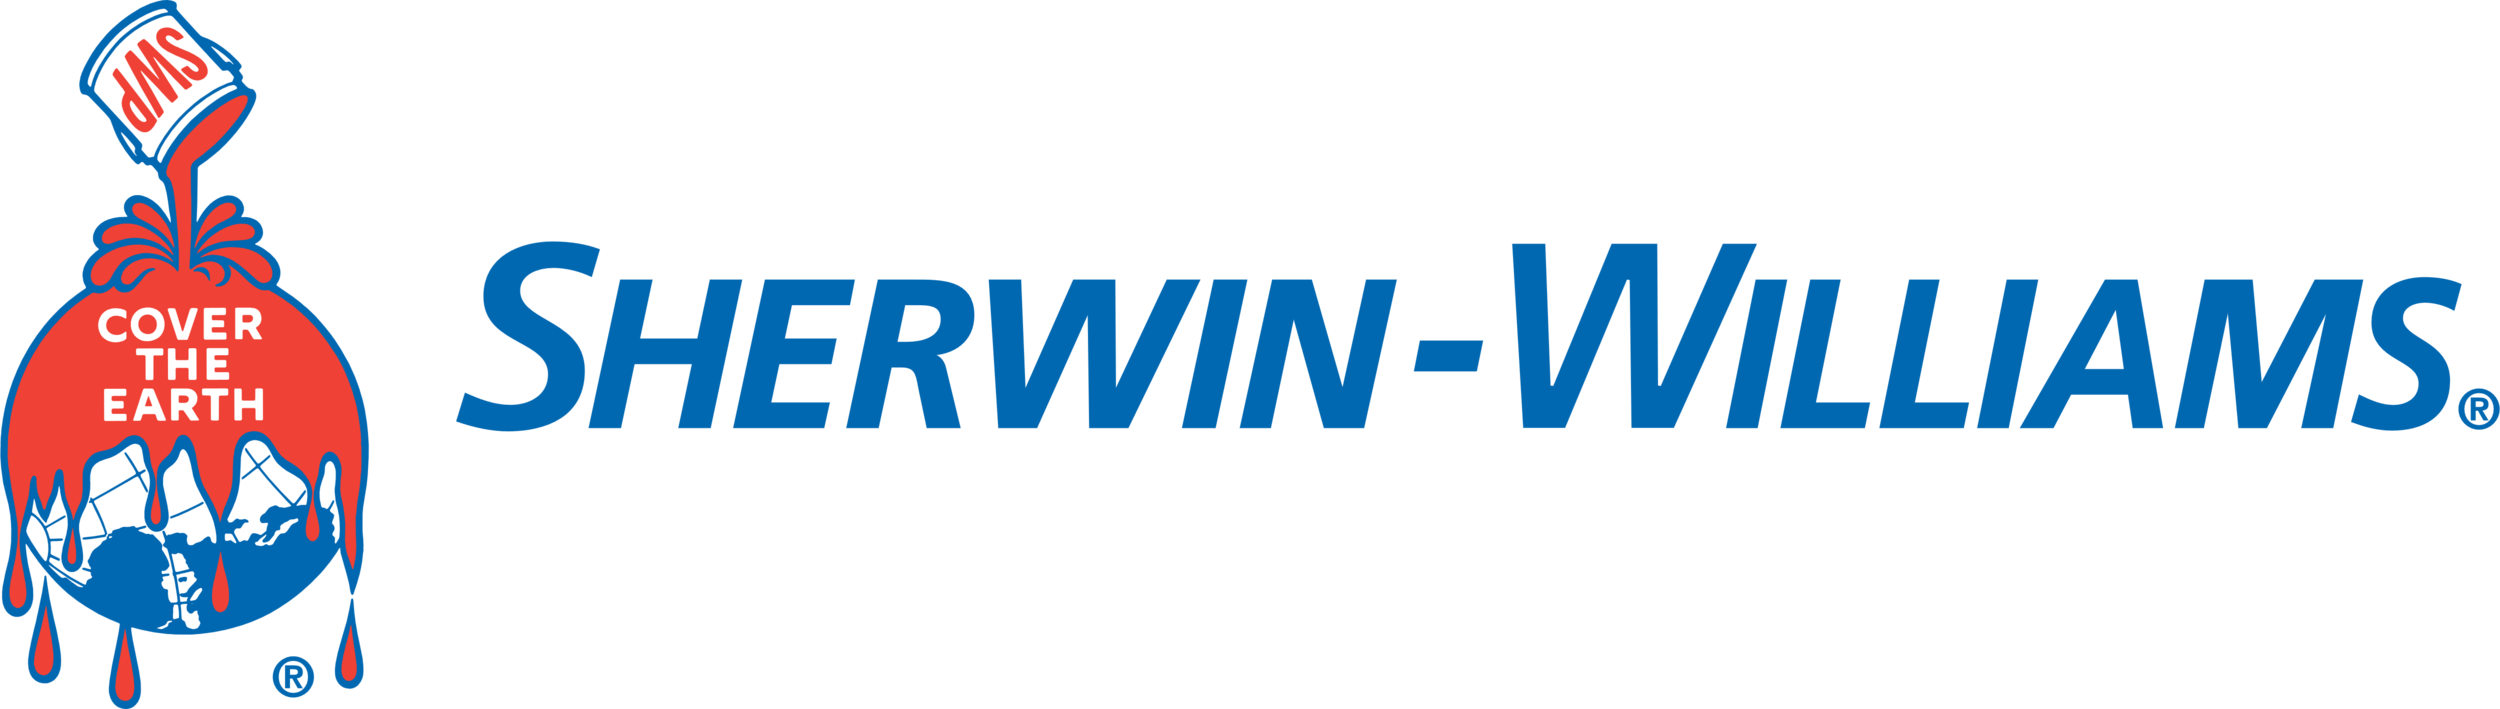 Sherwin Williams_logo.png